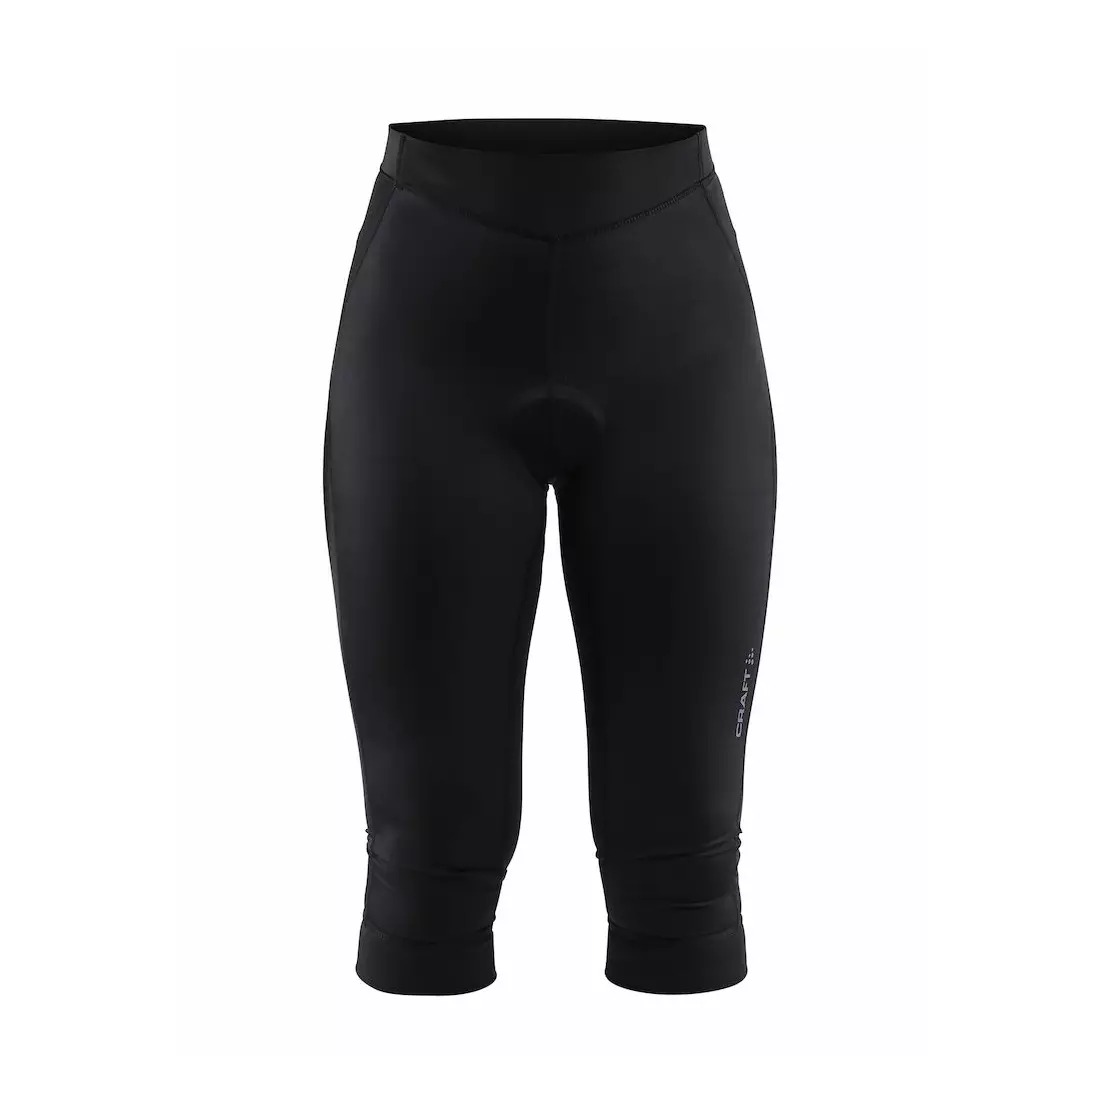 Pantaloni scurți de ciclism 3/4 pentru femei CRAFT RISE, negri 1906077-999000